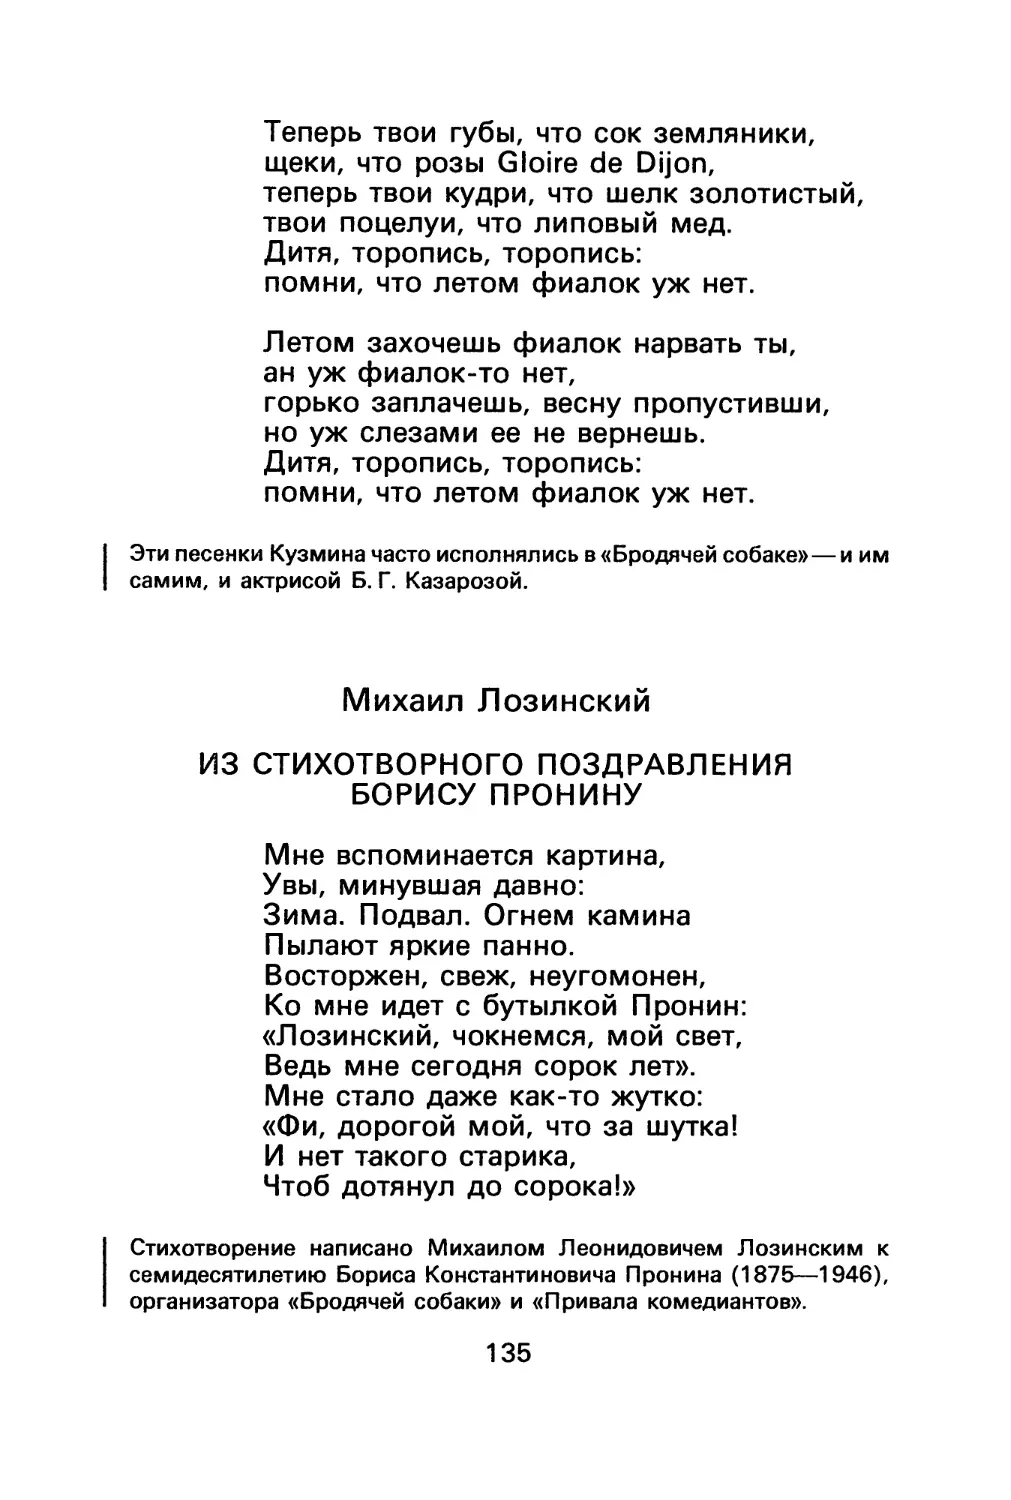 М. Лозинский. Из стихотворного поздравления Борису Пронину